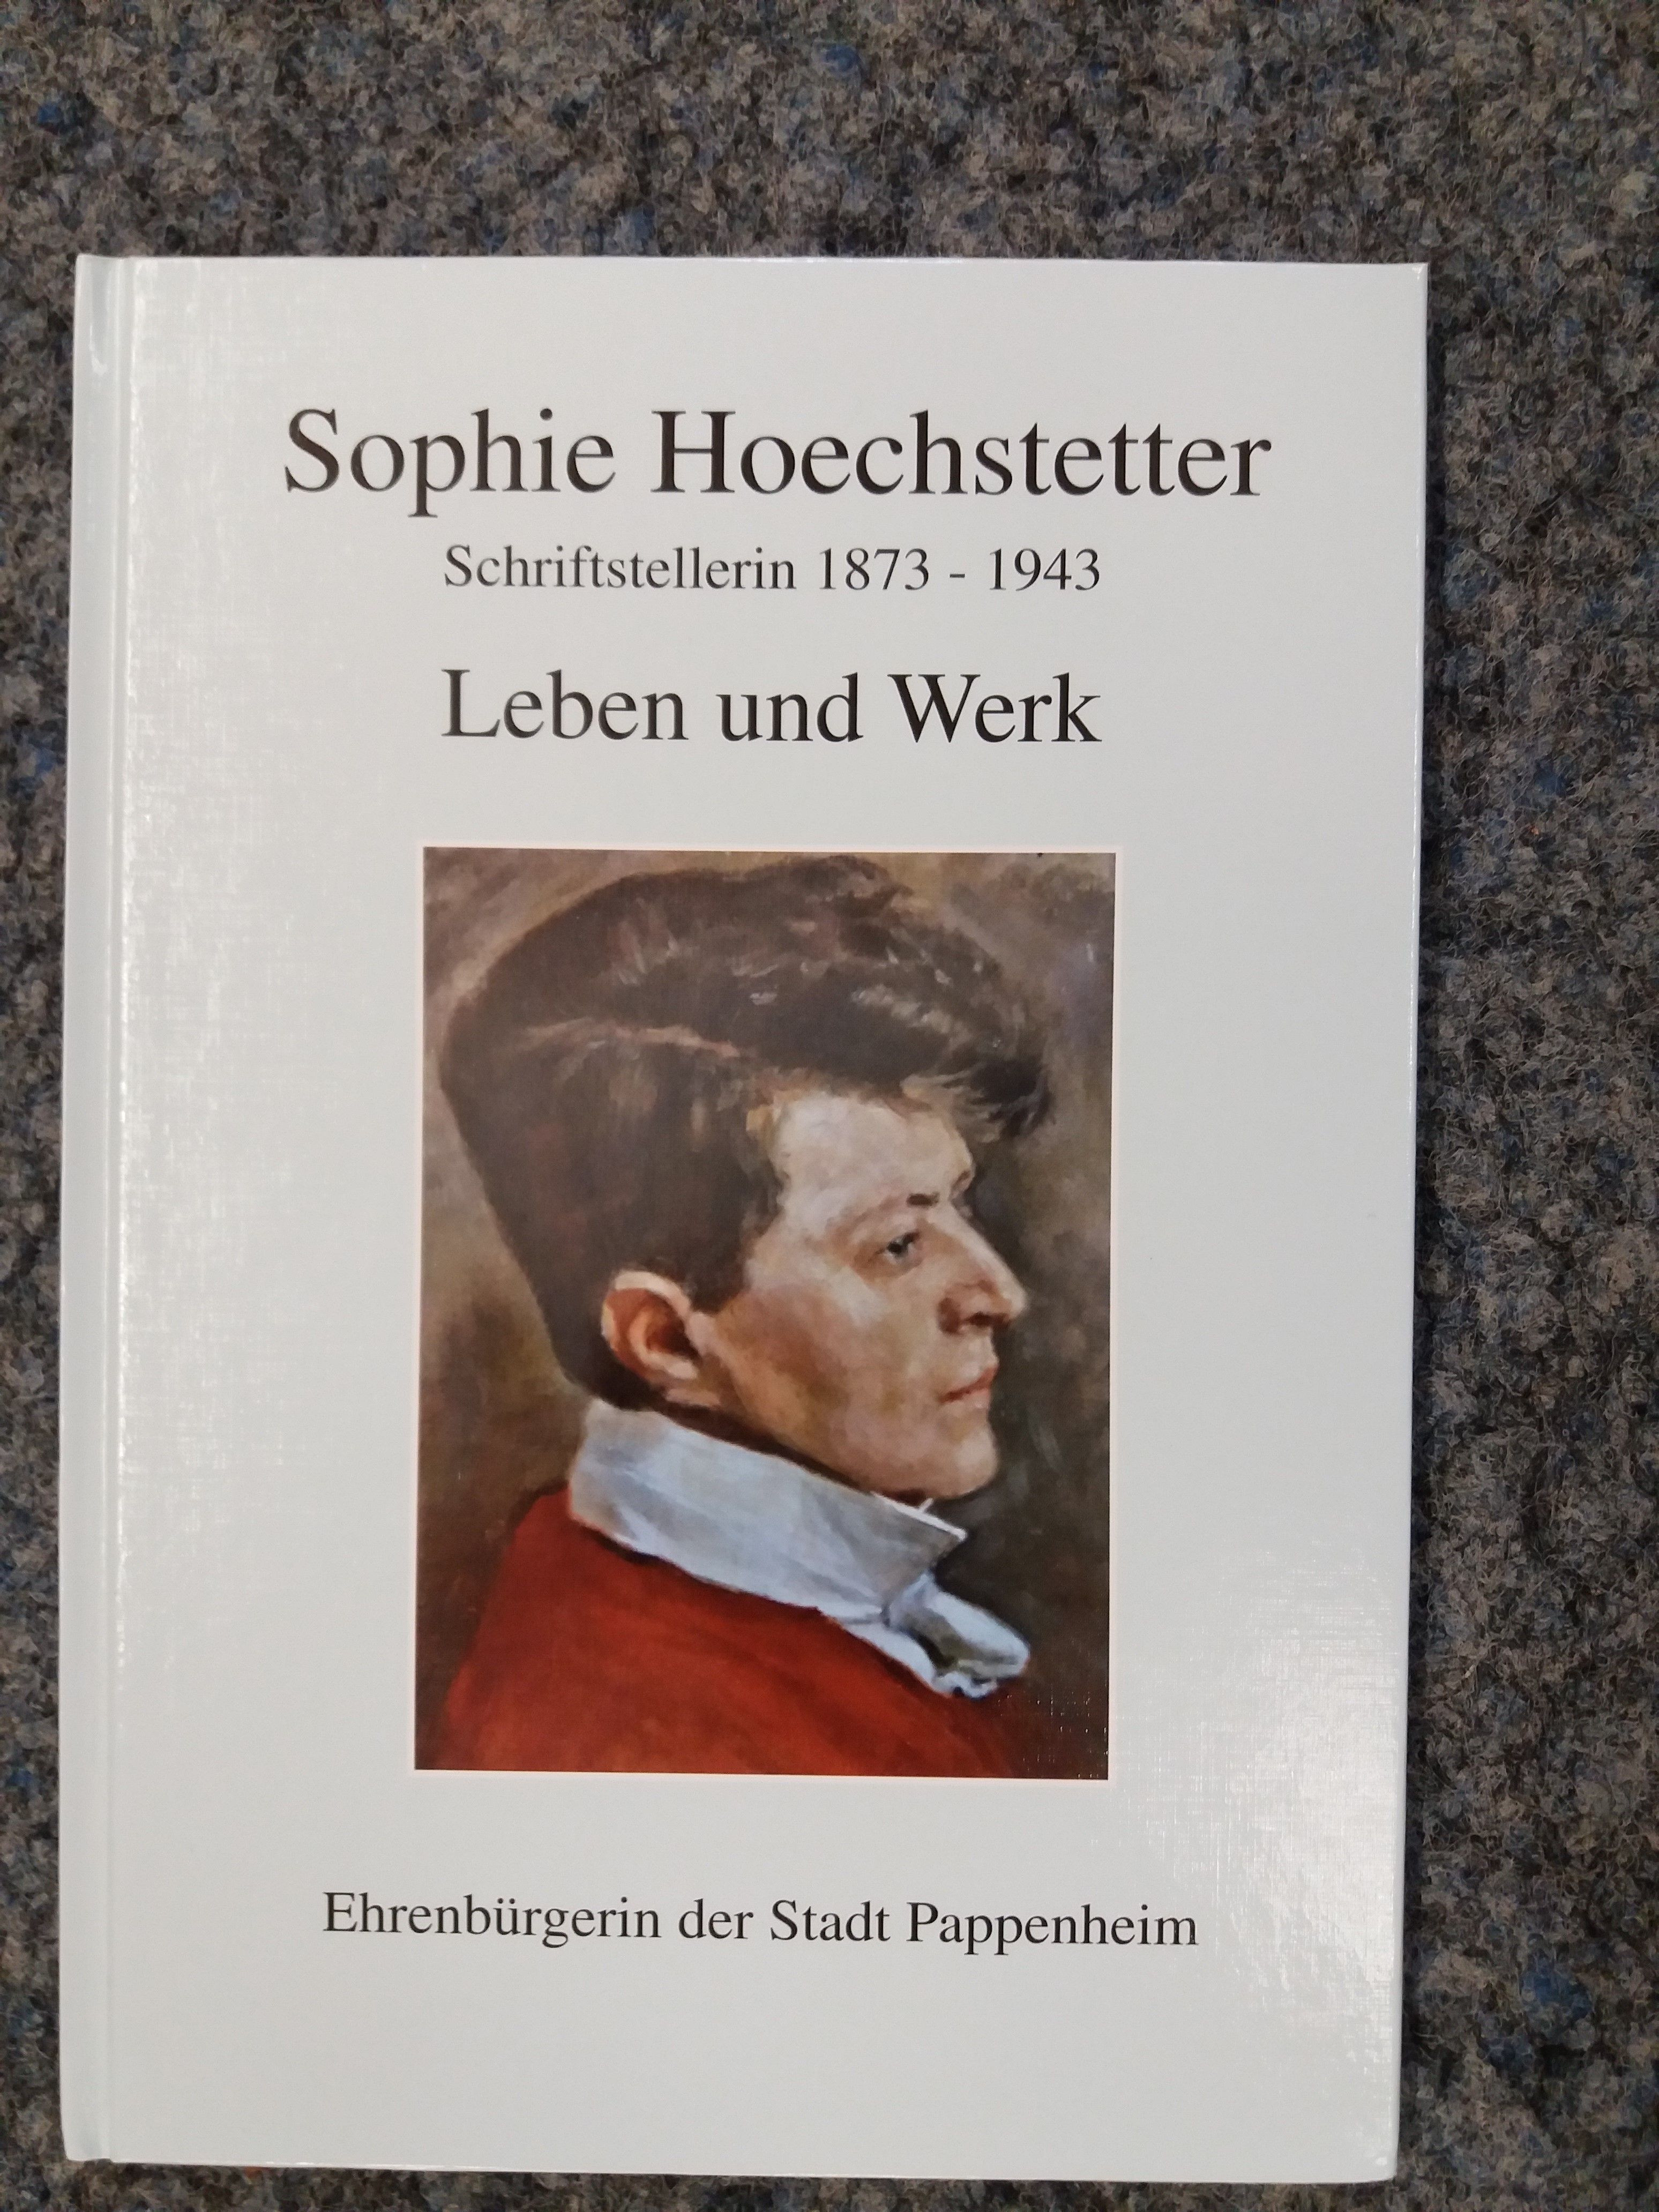 Sophie Hoechstetter - Leben und Werk